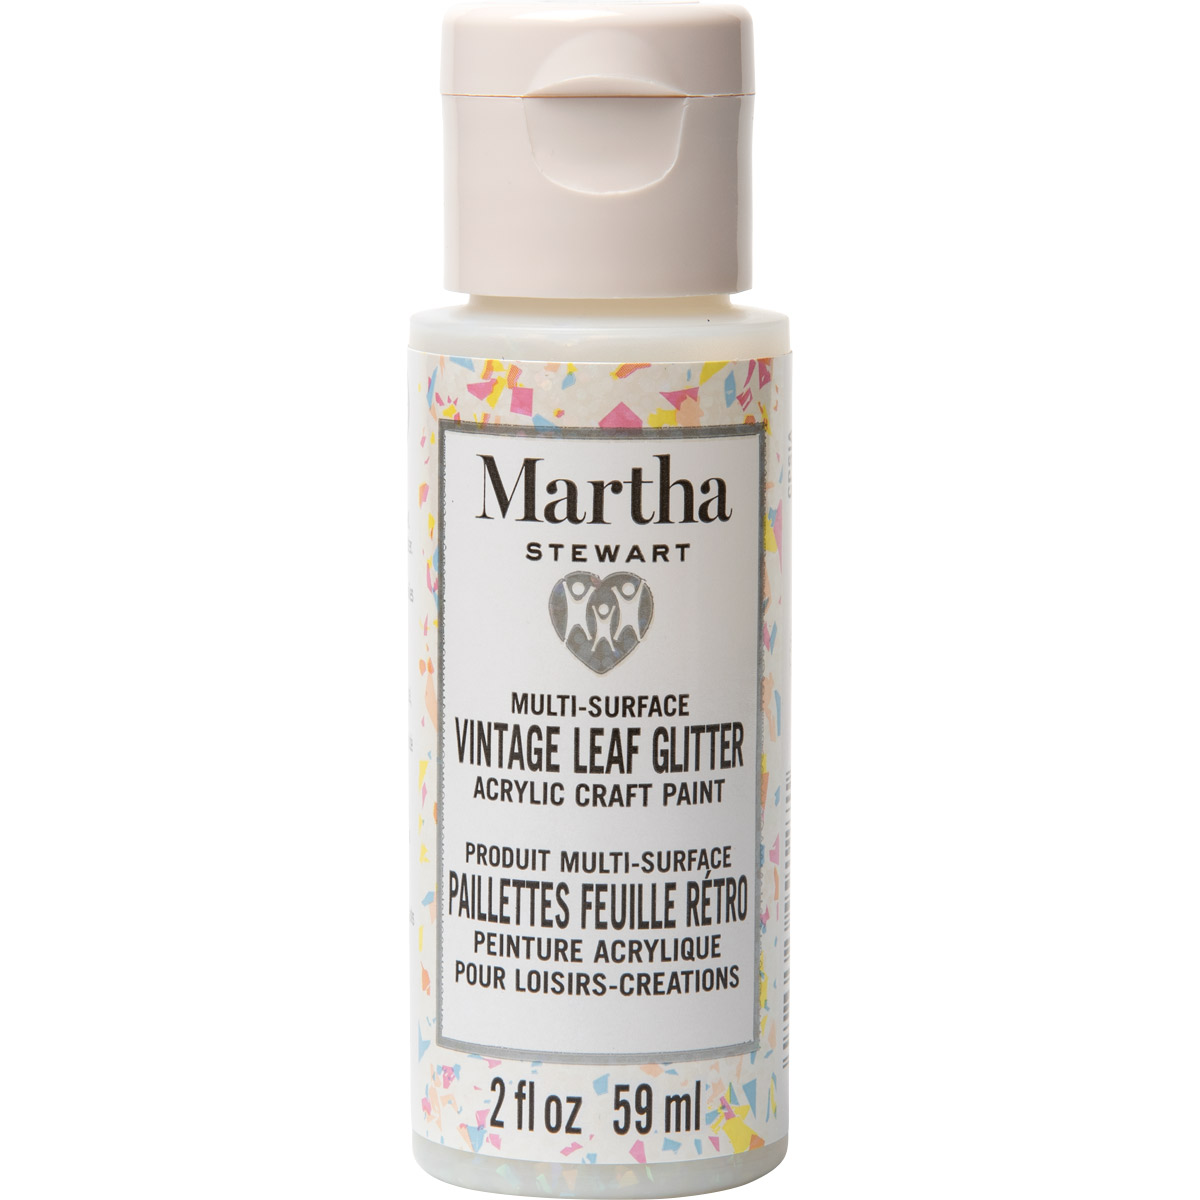 Martha Stewart ® Multi-Surface Vintage Leaf Glitter Acrylic Craft Paint CPSIA - Sugar Cube, 2 oz. - 